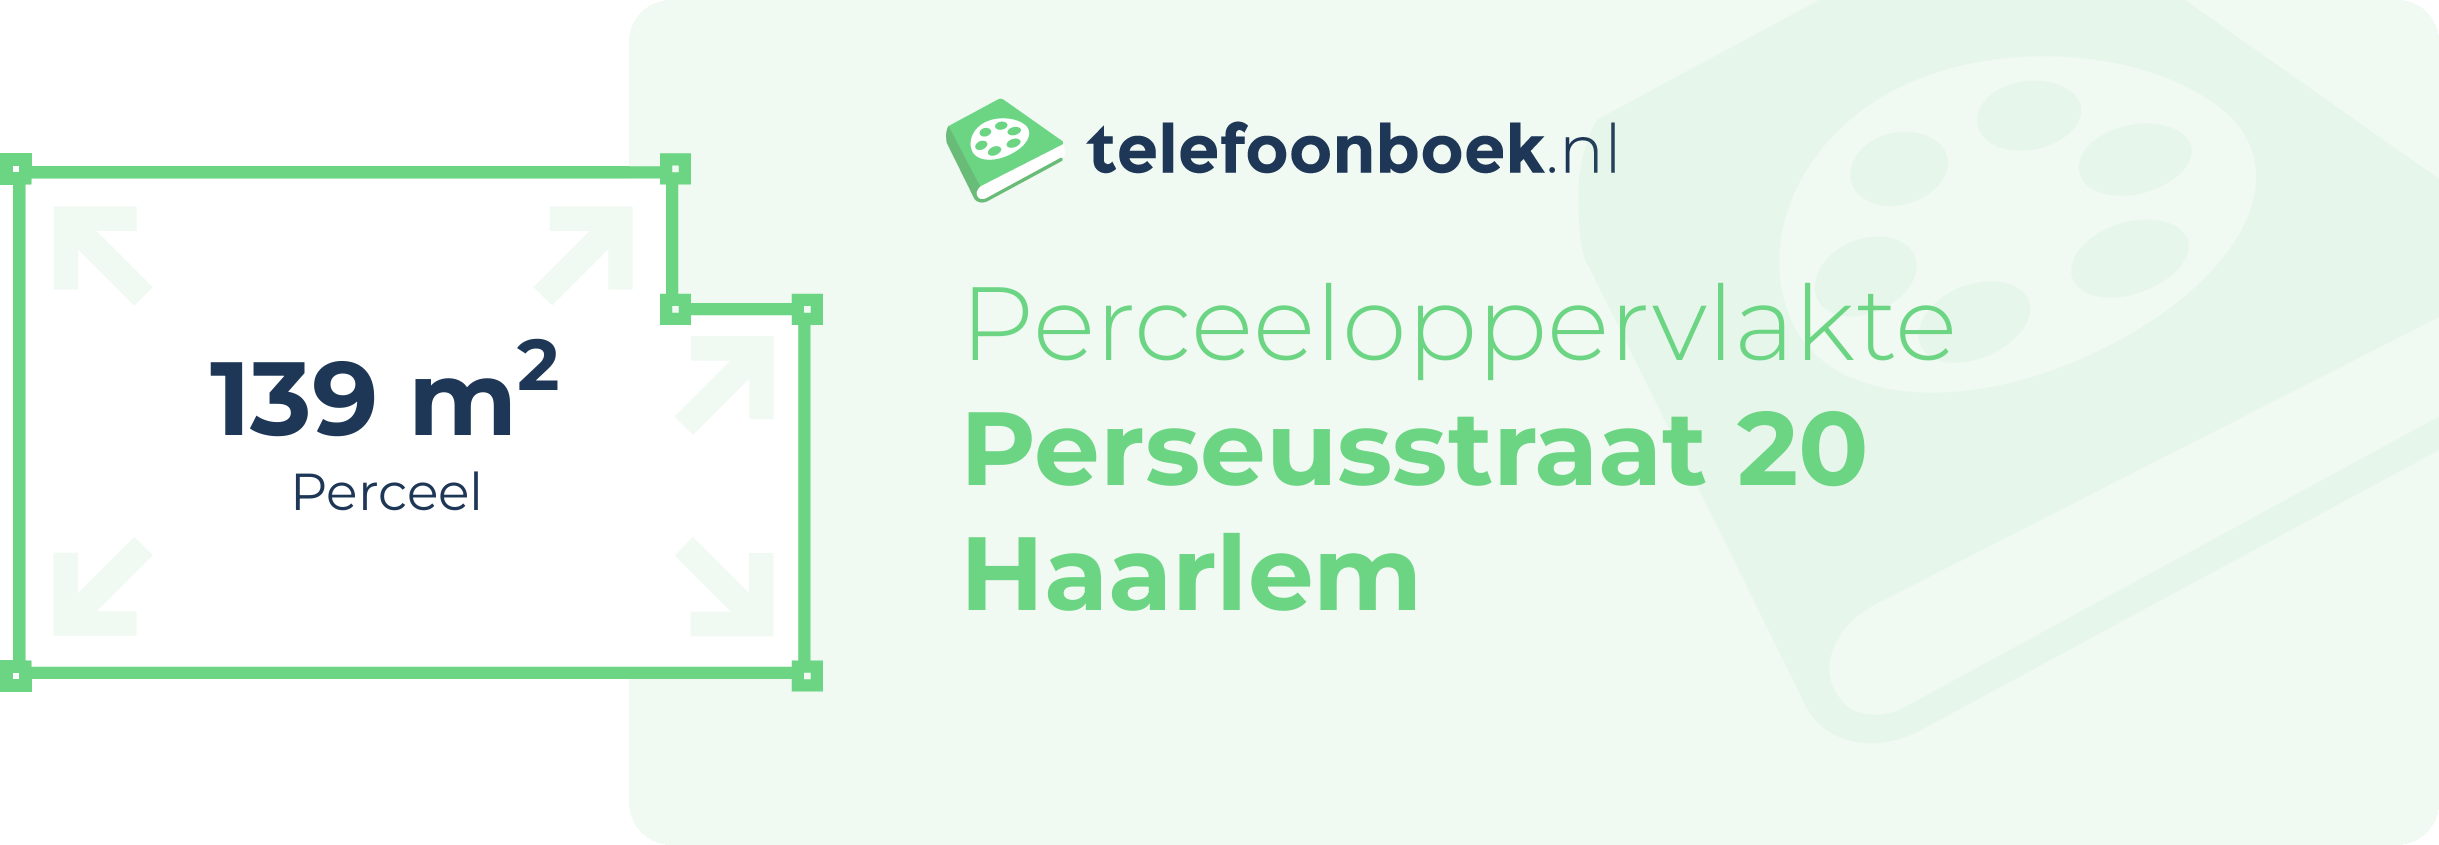 Perceeloppervlakte Perseusstraat 20 Haarlem